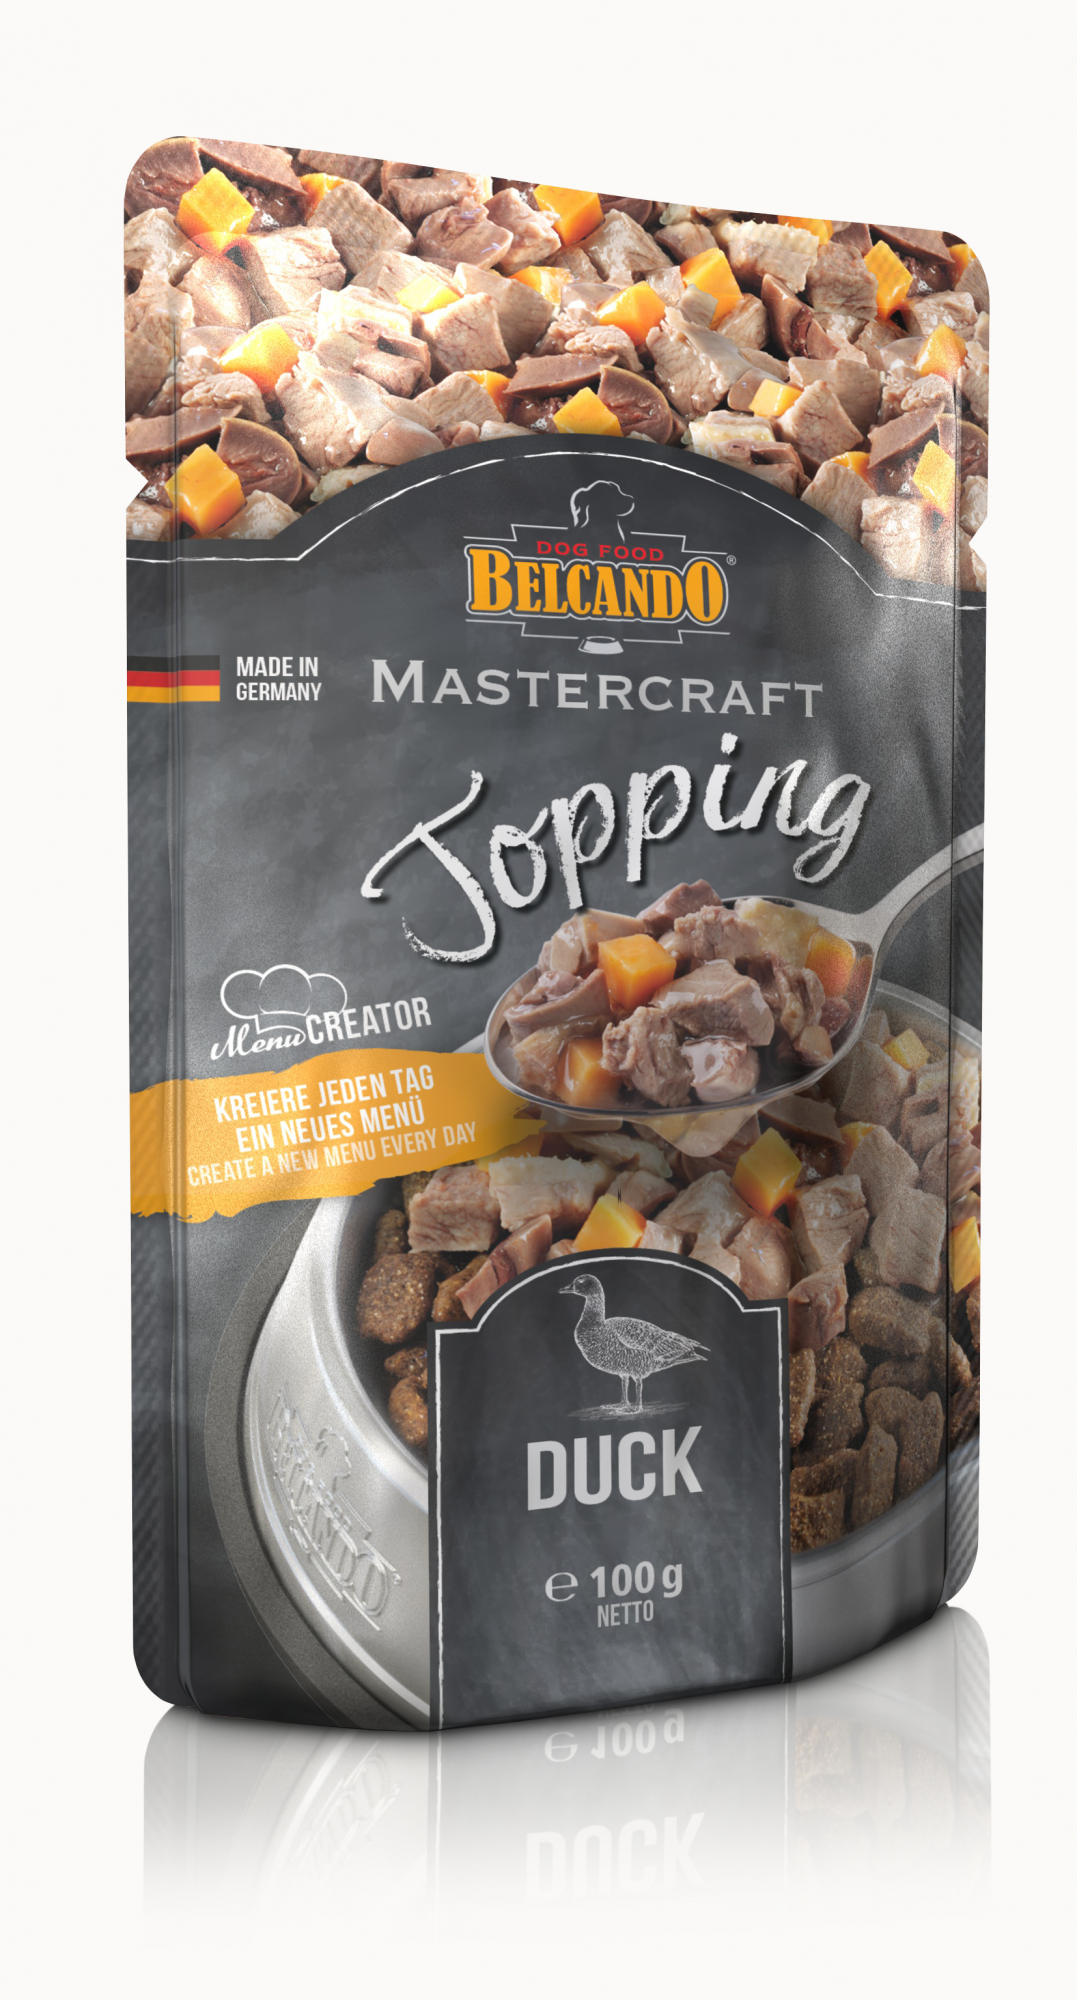 BELCANDO Mastercraft Topping pato com batata doce